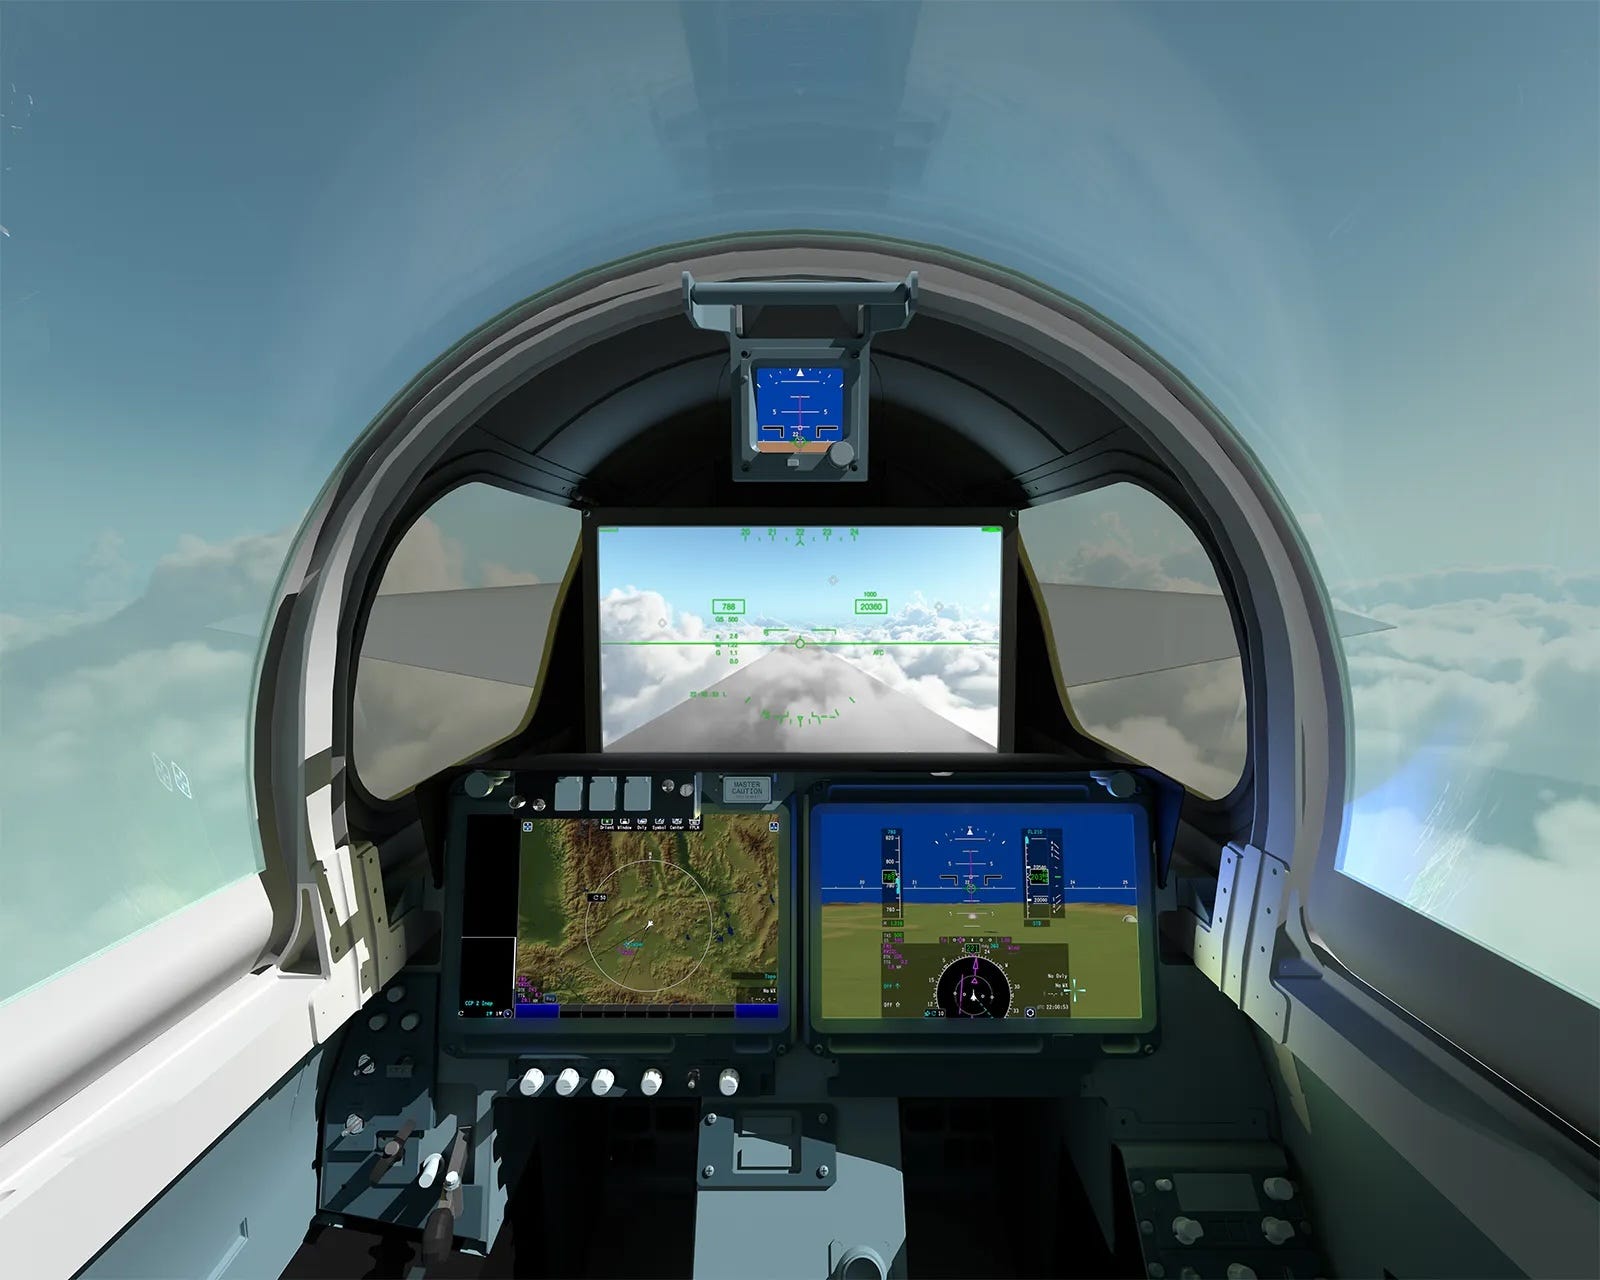 eine Darstellung im Cockpit eines Flugzeugs mit drei Bildschirmen, die den Blick nach draußen zeigen